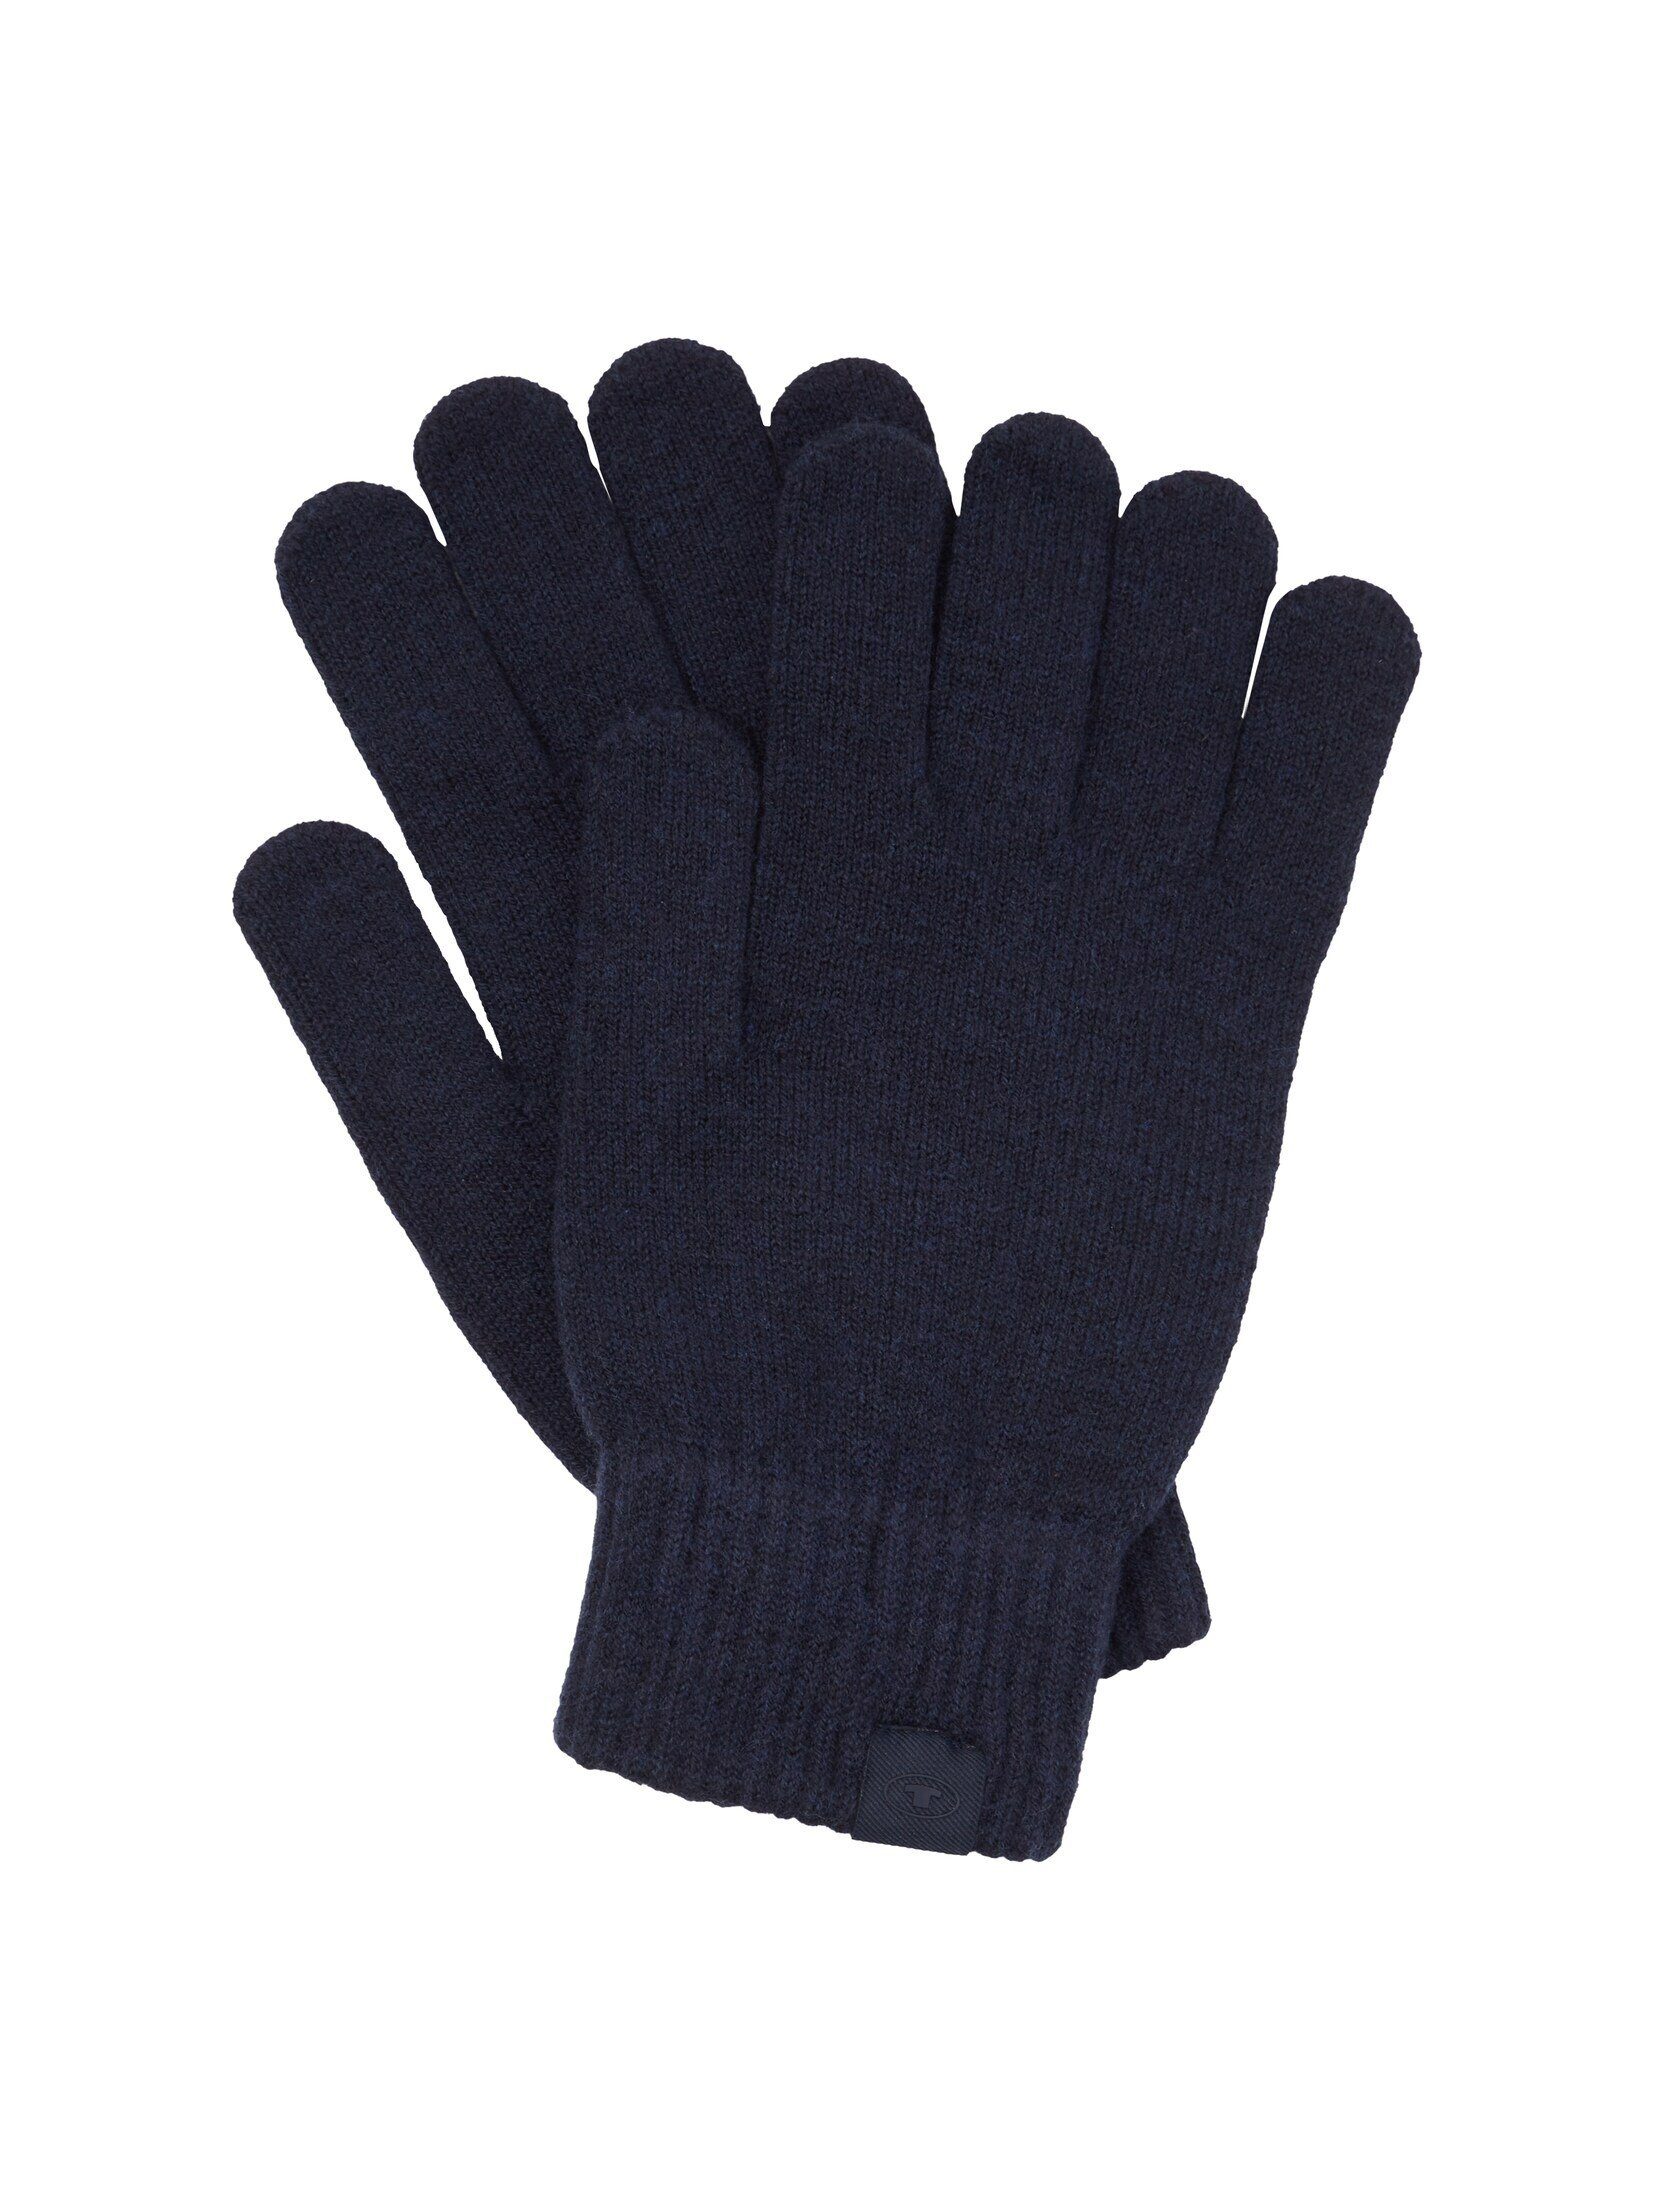 TOM TAILOR Lederhandschuhe Handschuhe aus Strick Knitted Navy Melange